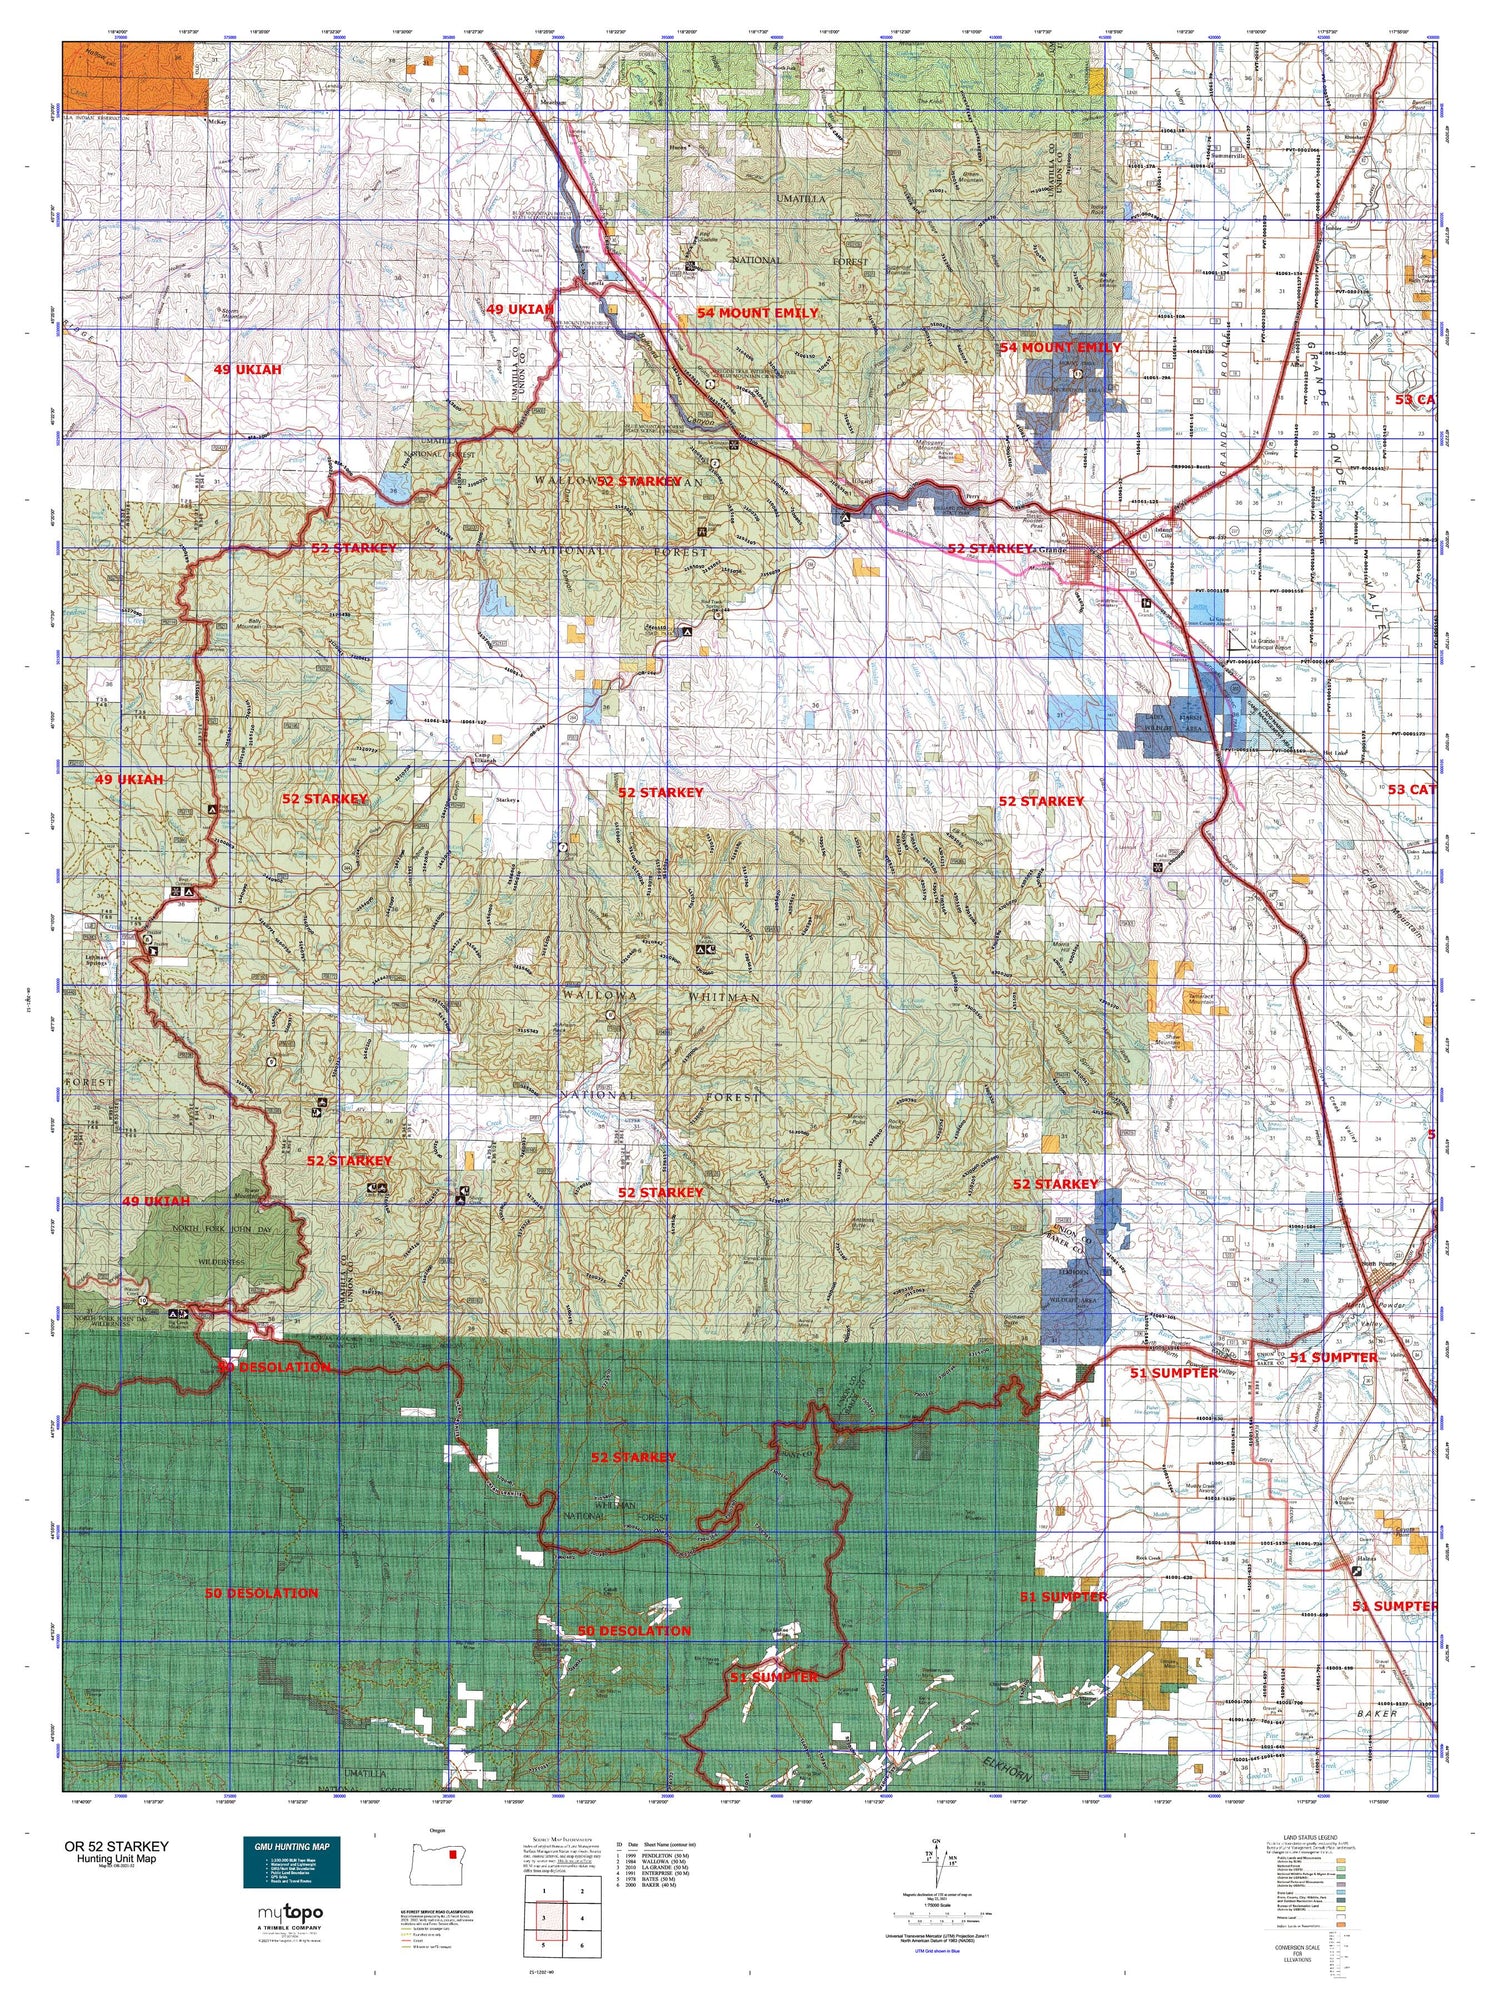 Oregon 52 Starkey Map Image